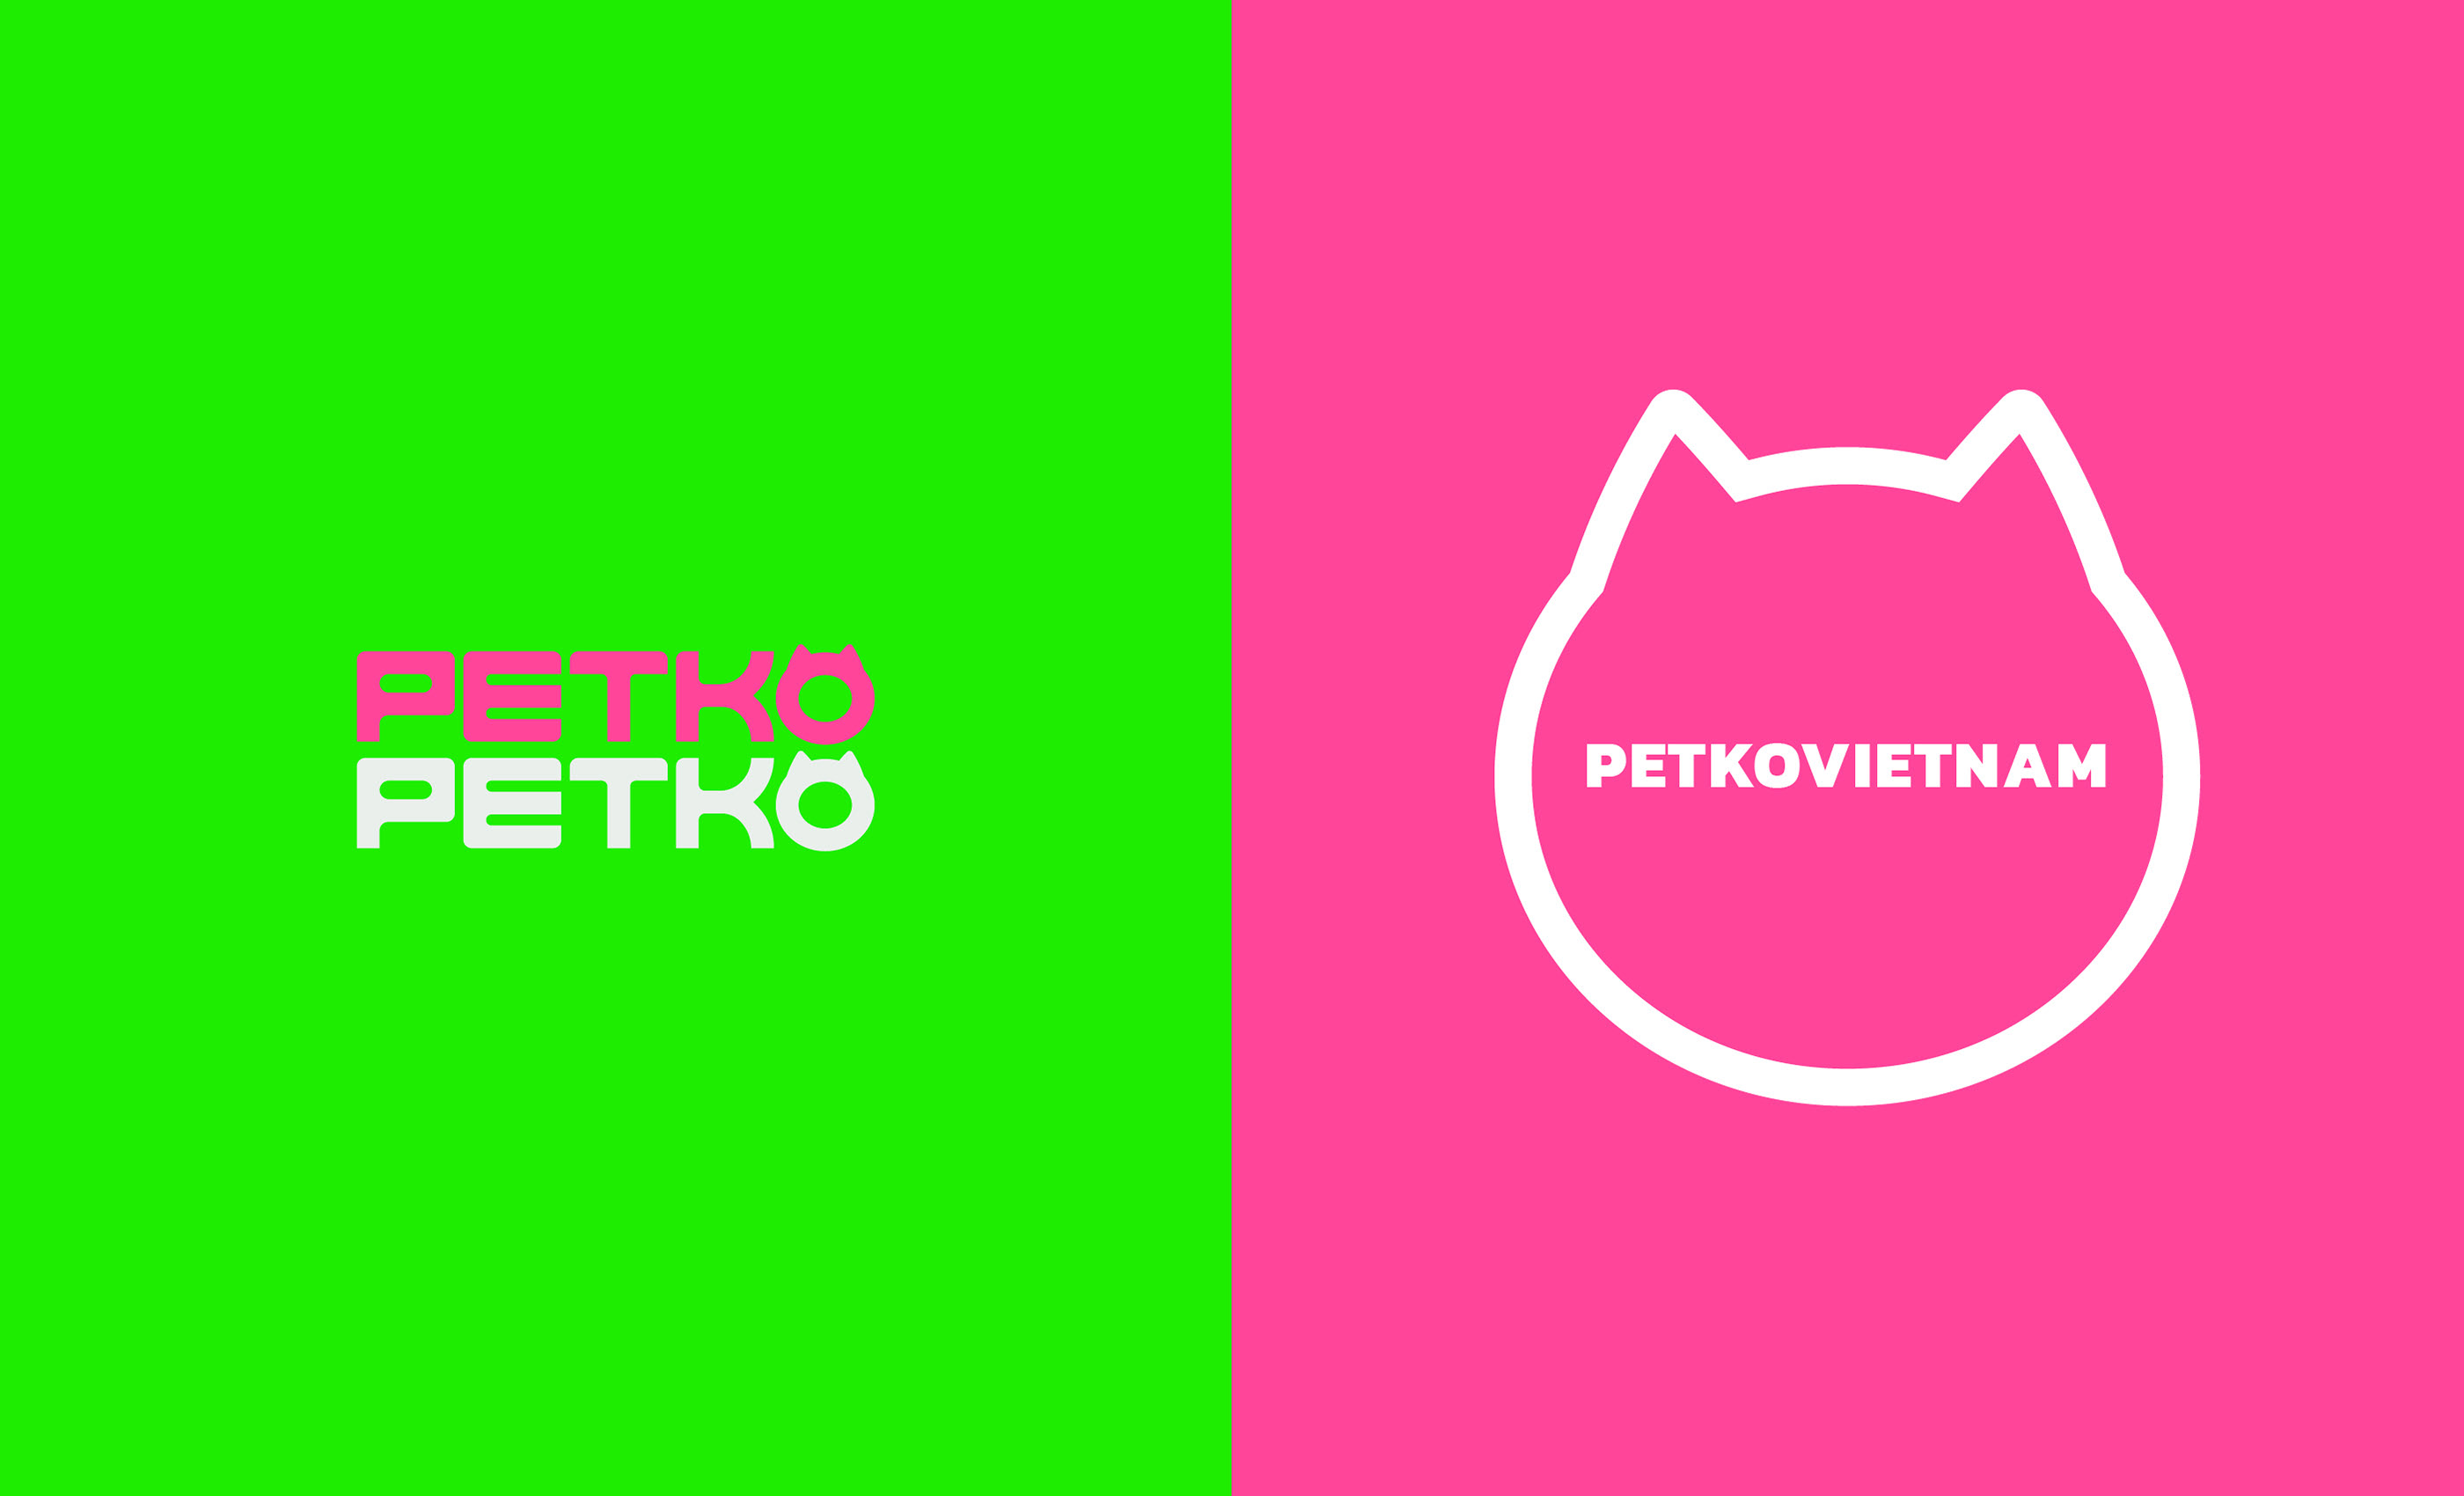 越南,PETKO,动物,收容所,视觉,设计 . 越南PETKO动物收容所视觉VI设计 